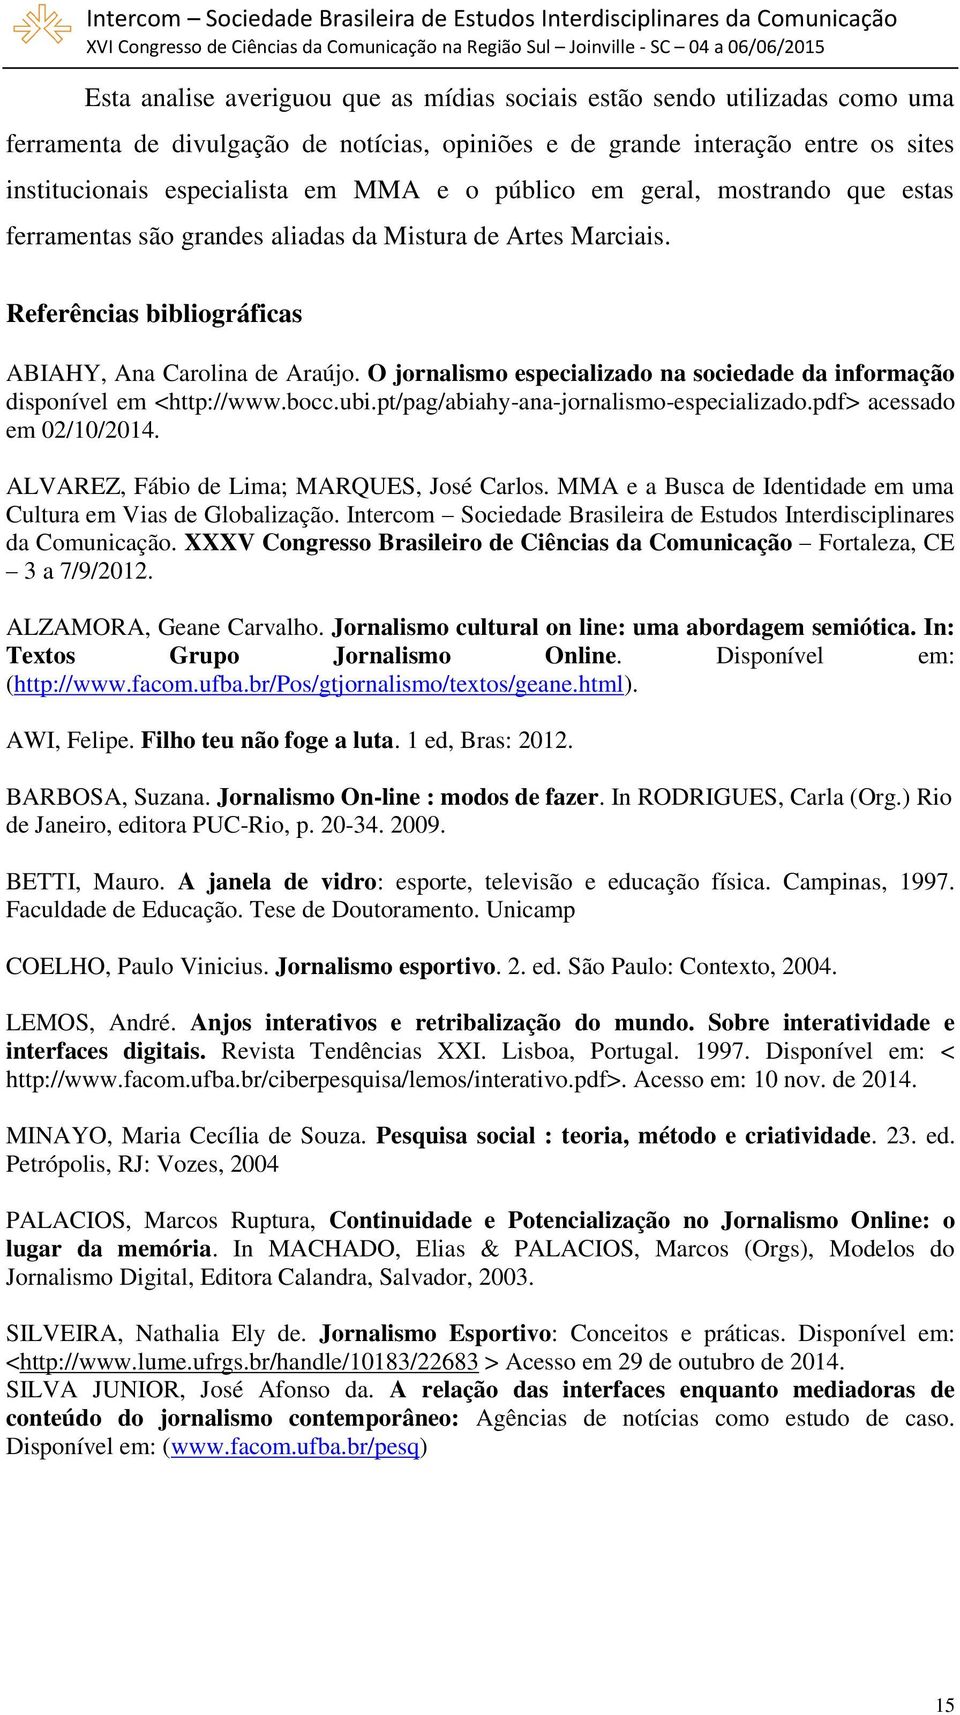 O jornalismo especializado na sociedade da informação disponível em <http://www.bocc.ubi.pt/pag/abiahy-ana-jornalismo-especializado.pdf> acessado em 02/10/2014.